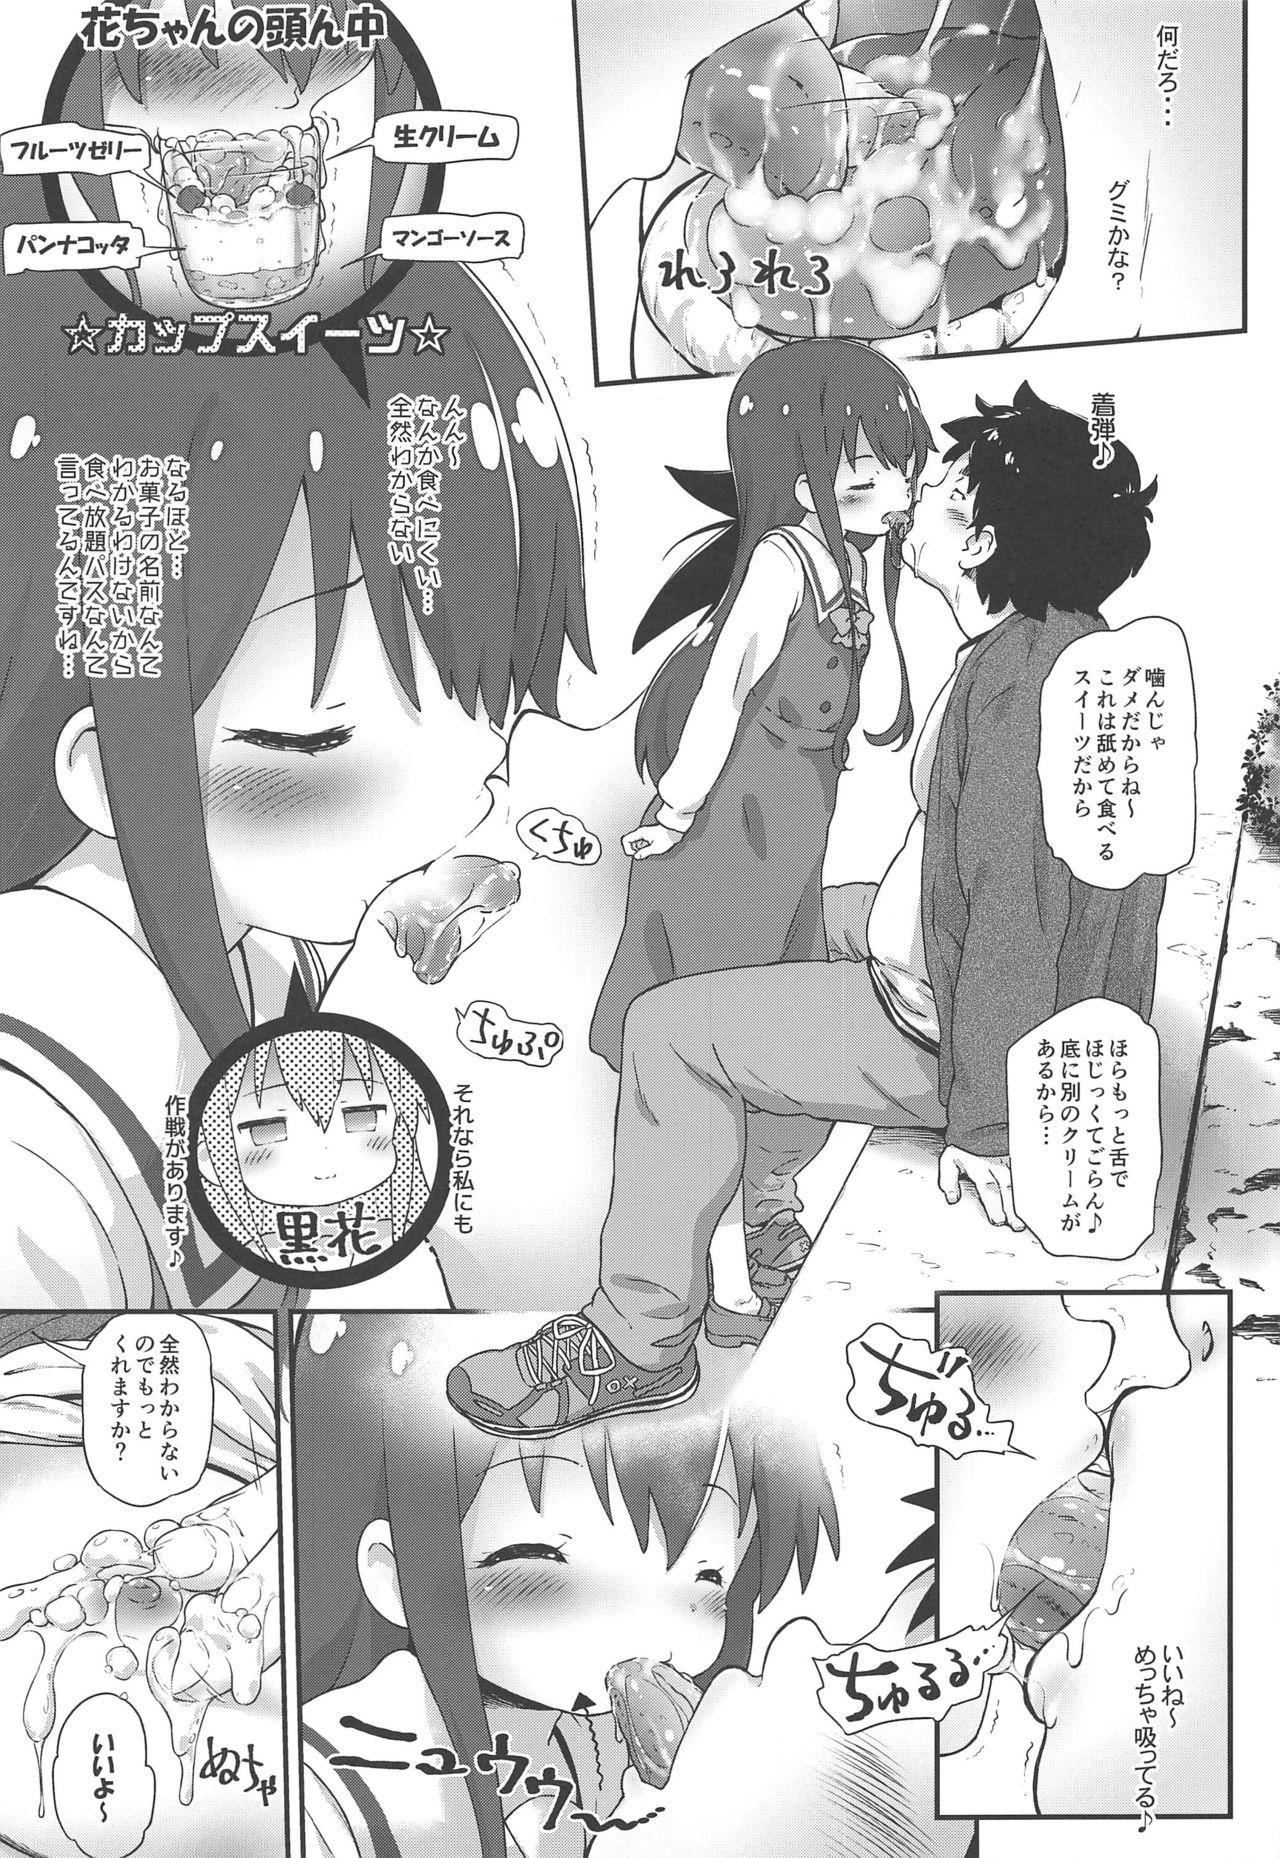 Cdmx Toro Musume 20 Chorohana - Watashi ni tenshi ga maiorita Jockstrap - Page 8